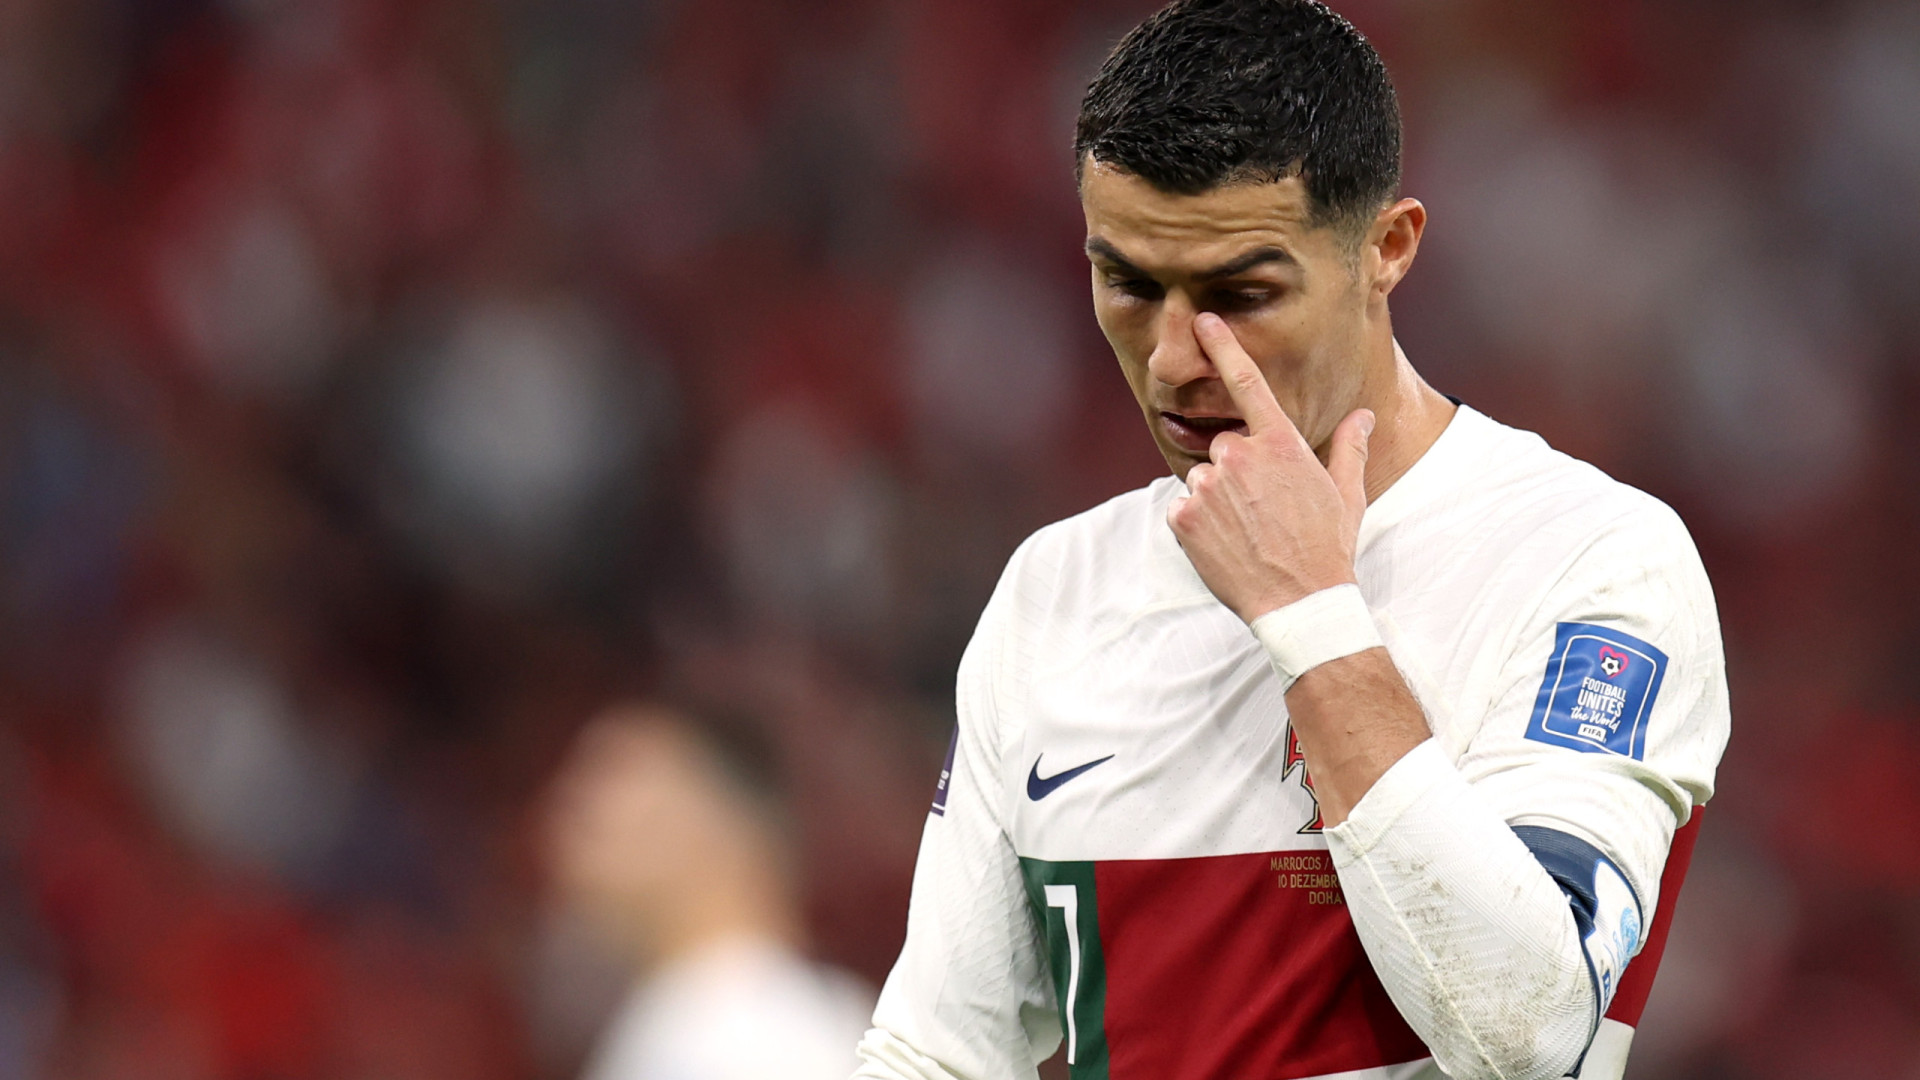 'O sonho foi bonito enquanto durou', diz Cristiano Ronaldo